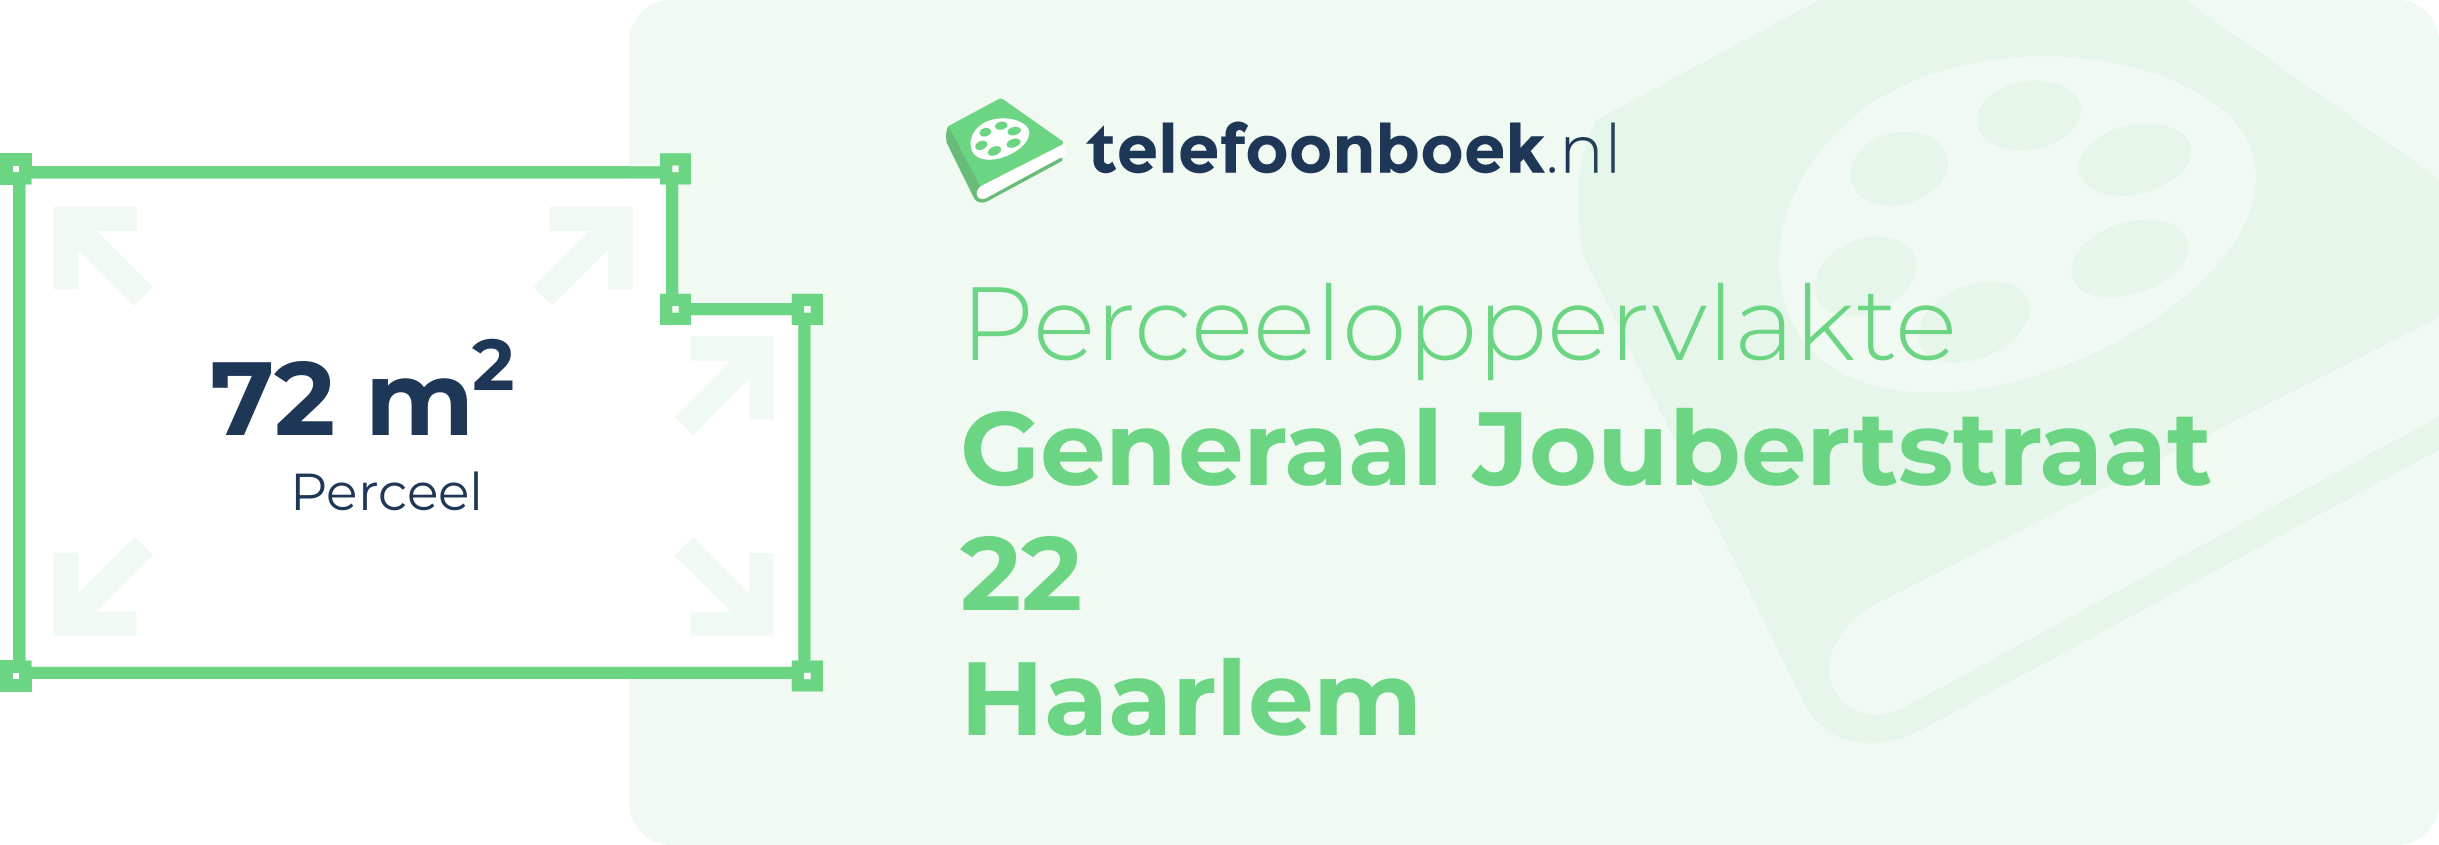 Perceeloppervlakte Generaal Joubertstraat 22 Haarlem